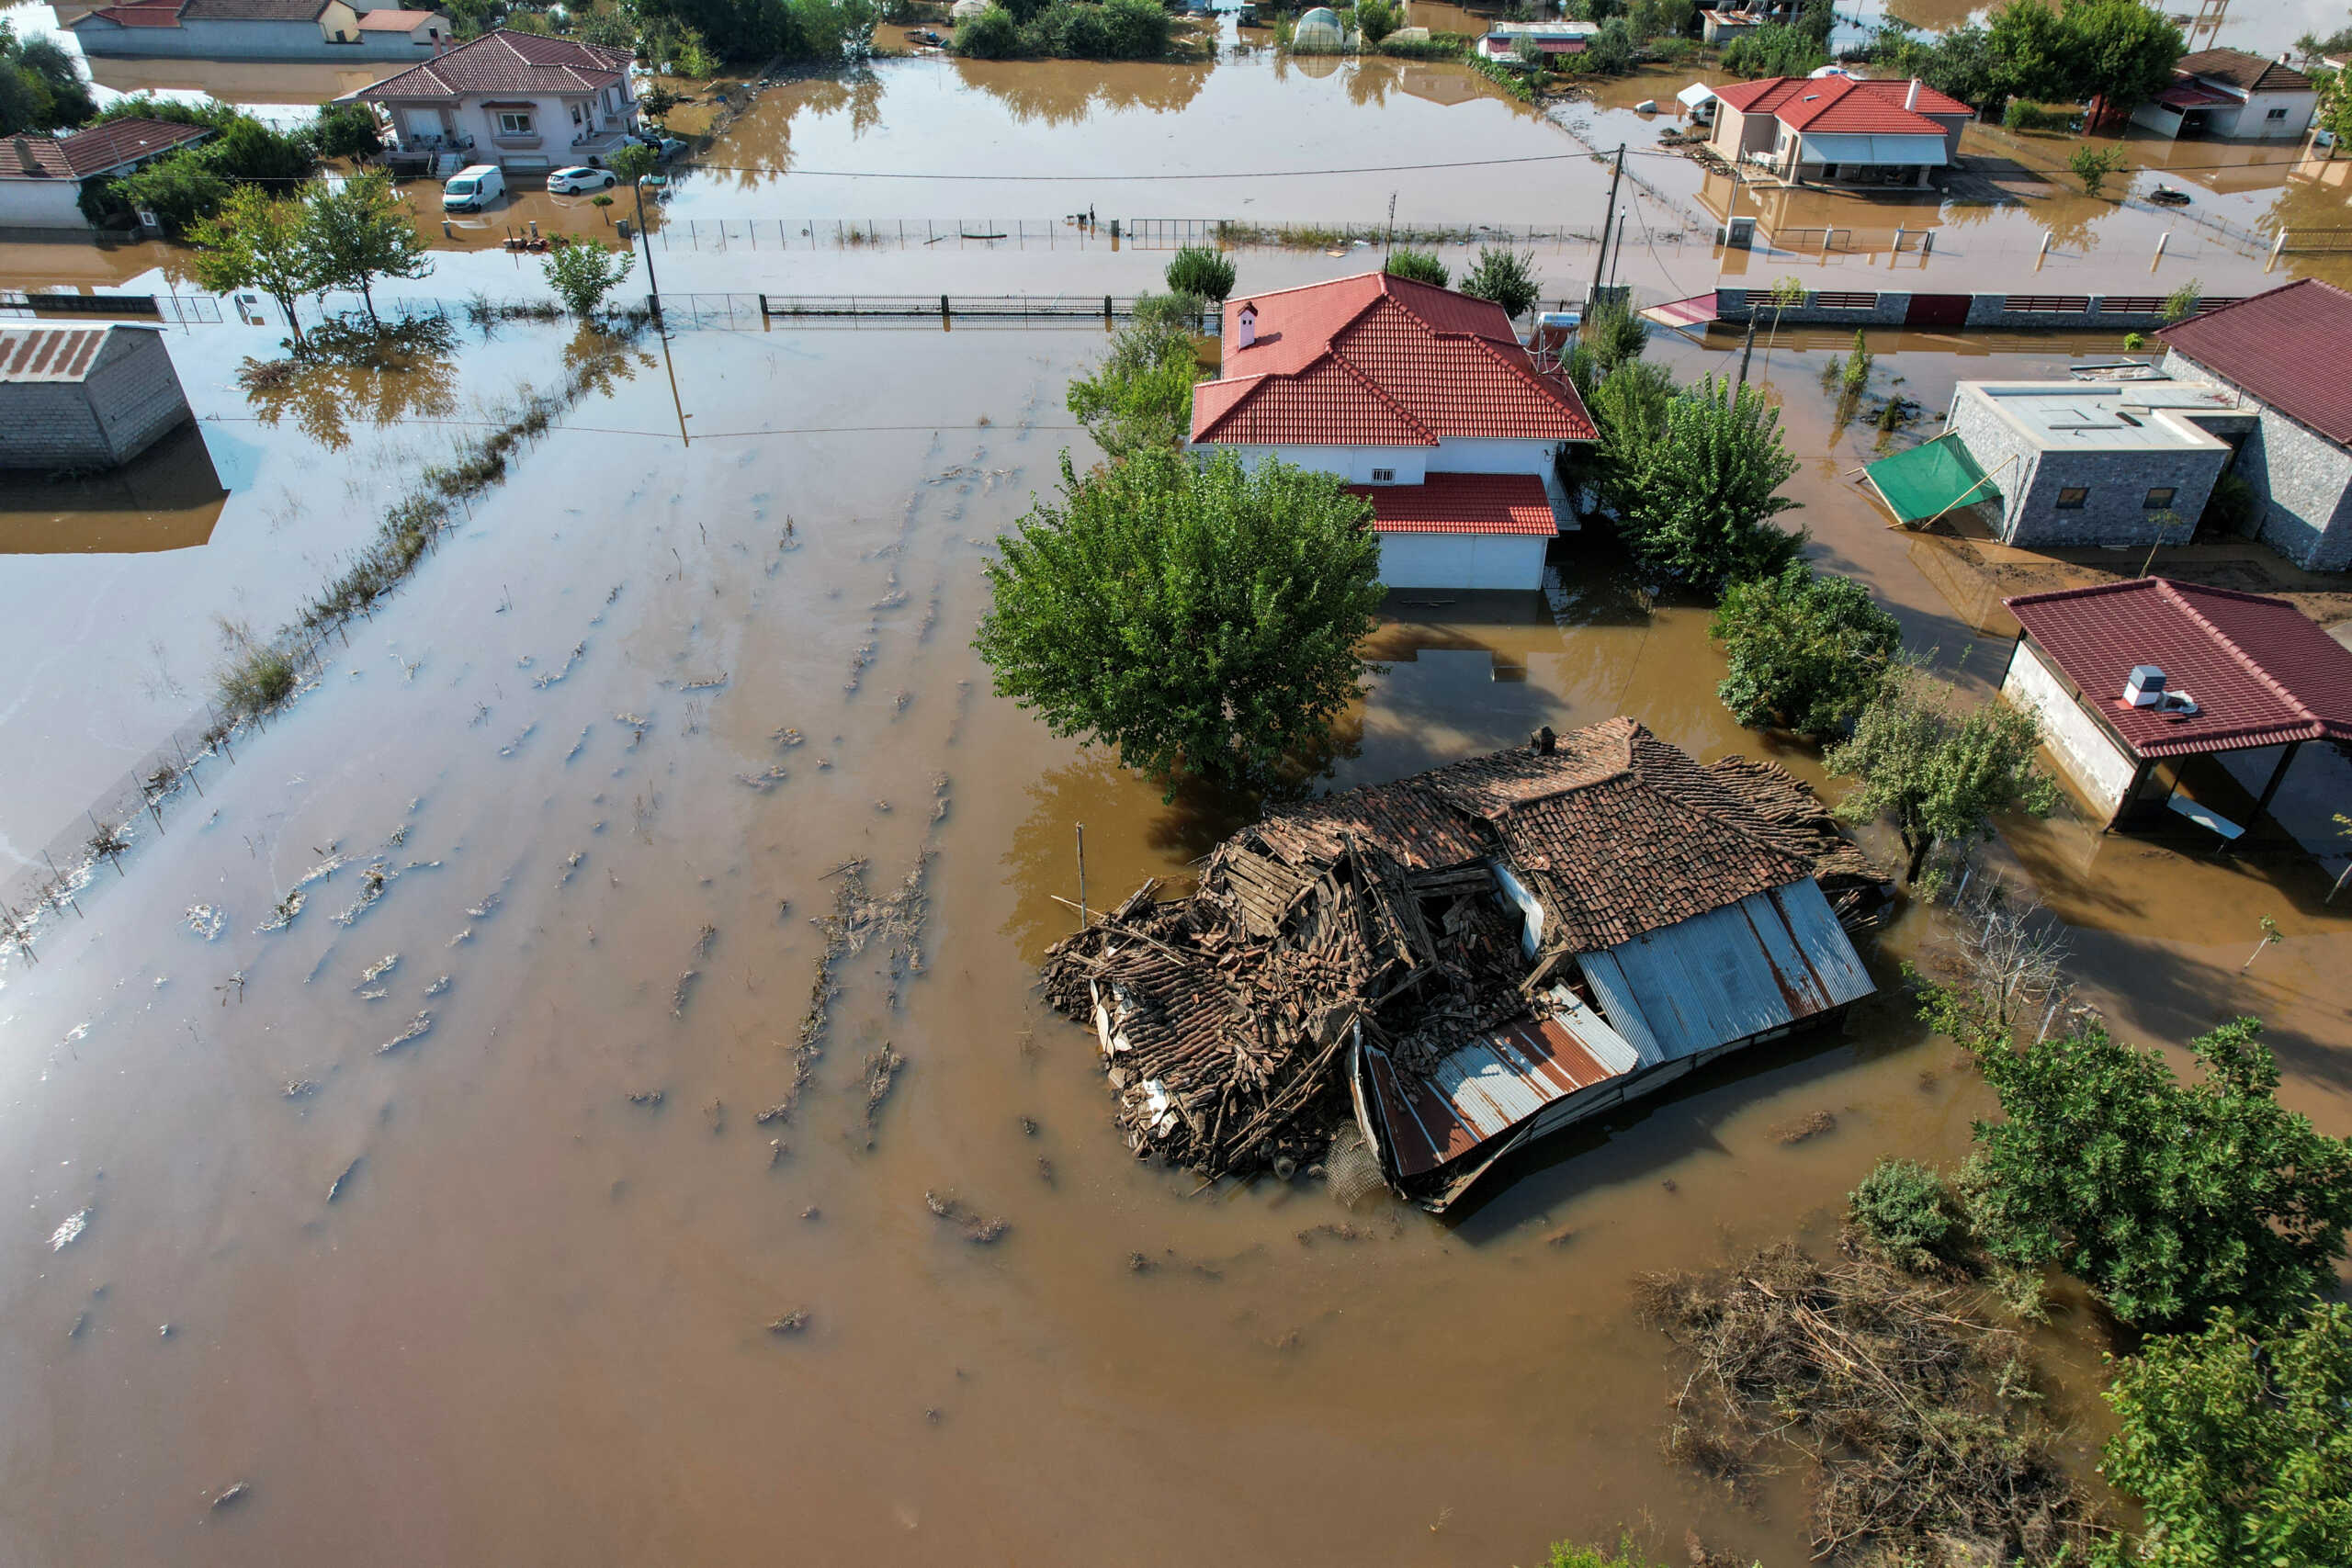 Κακοκαιρία: Οι πλημμύρες μπορούν να προκαλέσουν προβλήματα υγείας – Οδηγίες για την προστασία των πολιτών